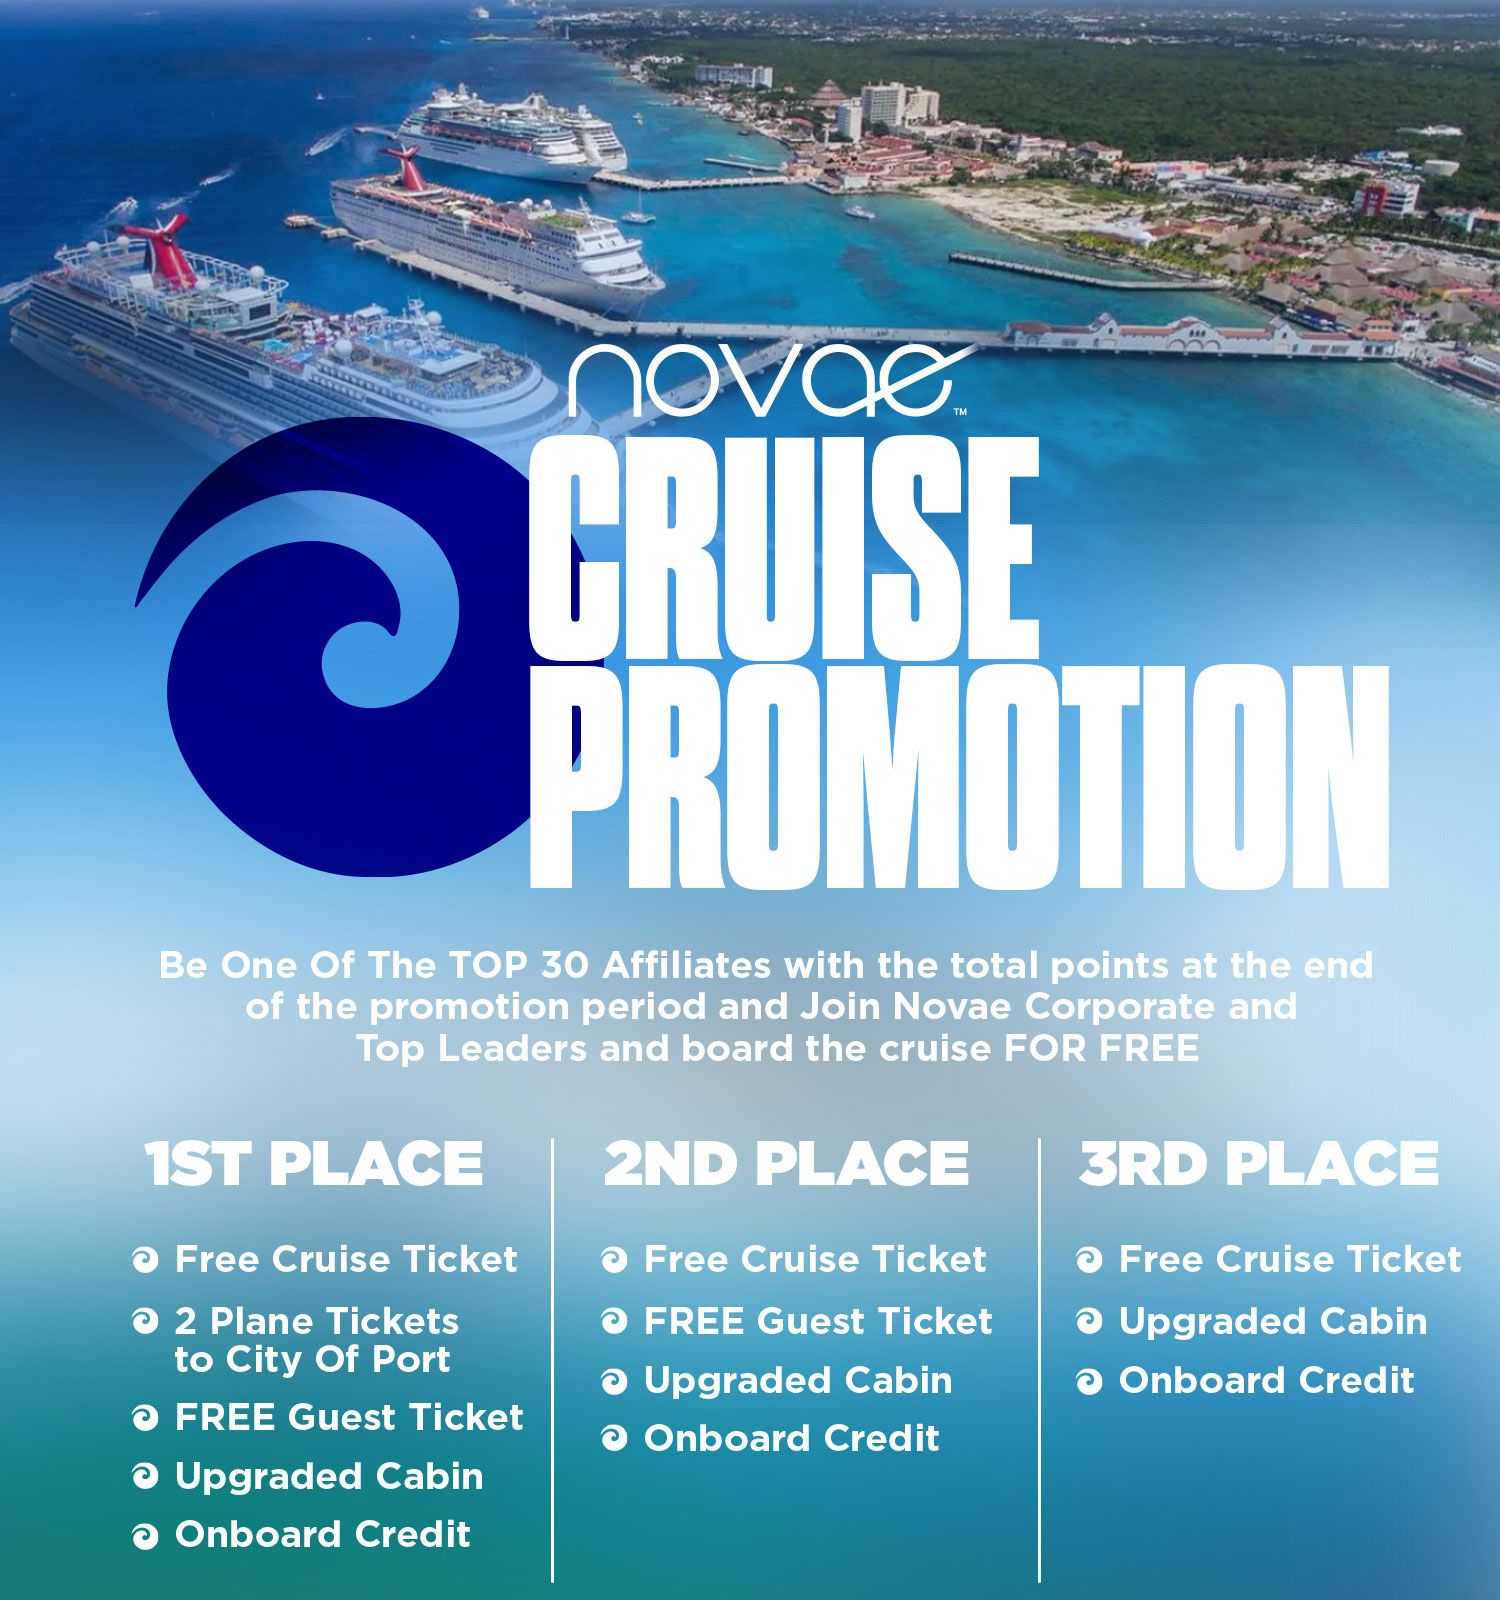 Novae Cruise